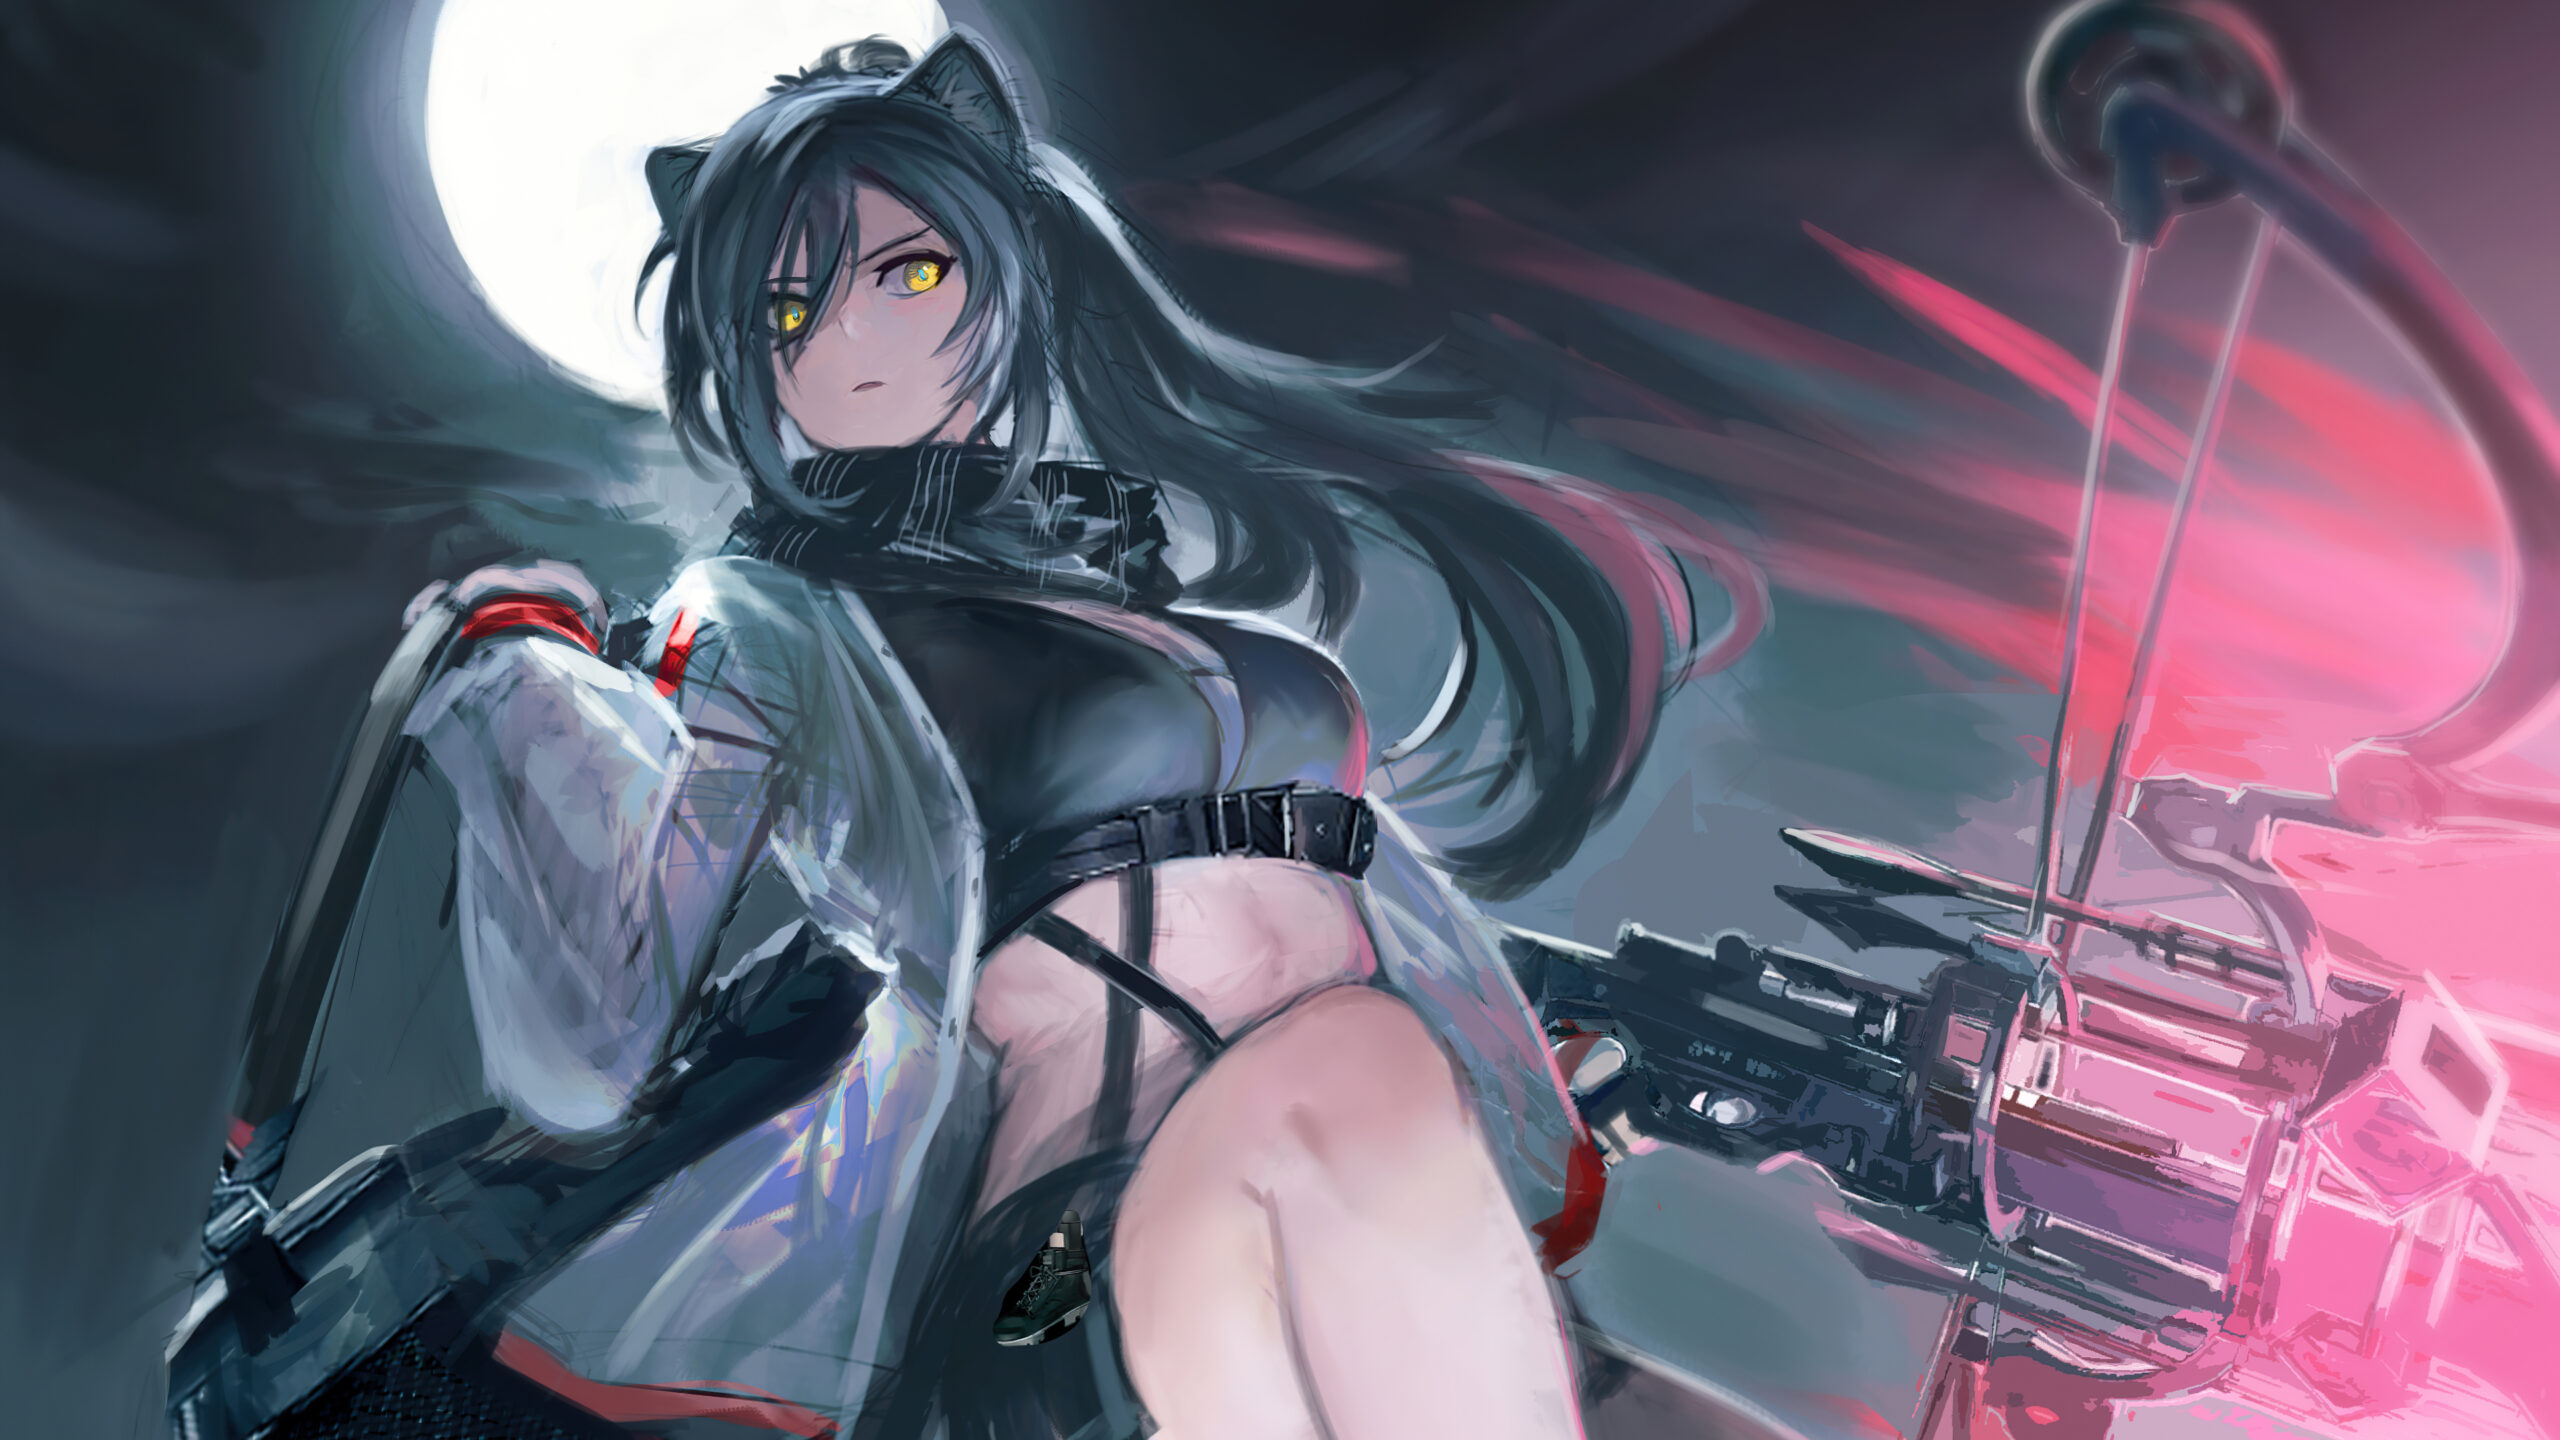 Hình nền  Anime cô gái mắt xanh trường học Súng bắn tỉa đồng phục Bắn  tỉa sát thủ Barrett M82 AutoMan Ảnh chụp màn hình 5846x4133  UAman   57863 